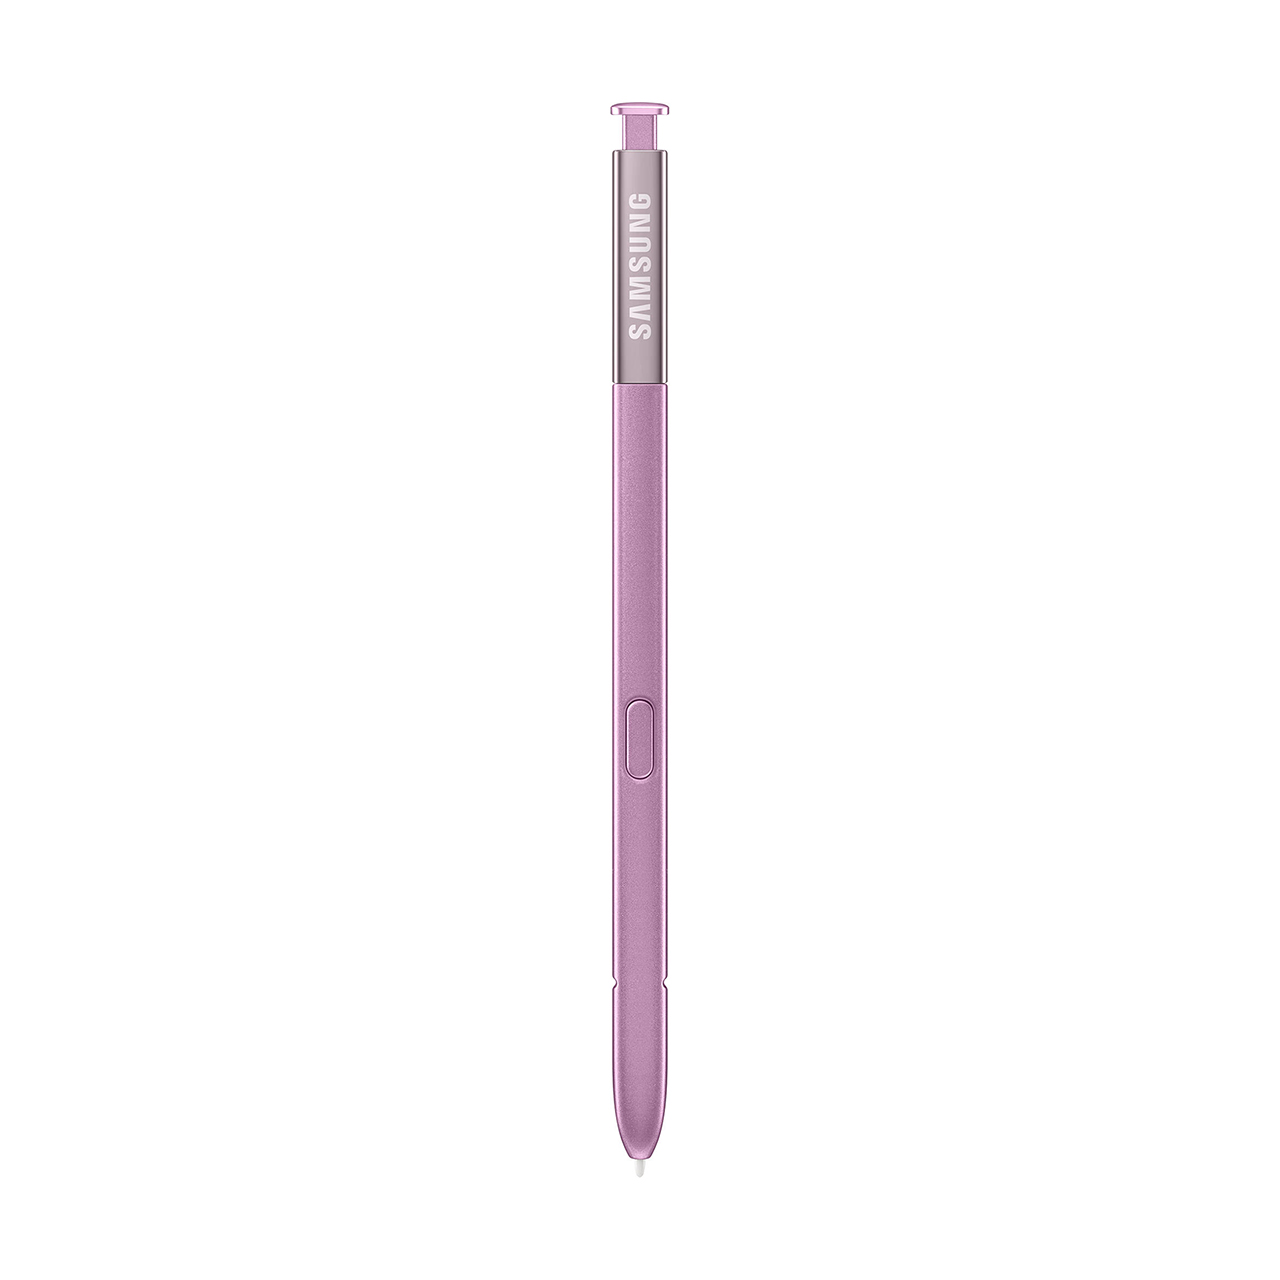 قلم لمسی سامسونگ مدل S Pen مناسب برای گوشی سامسونگ Galaxy Note 9